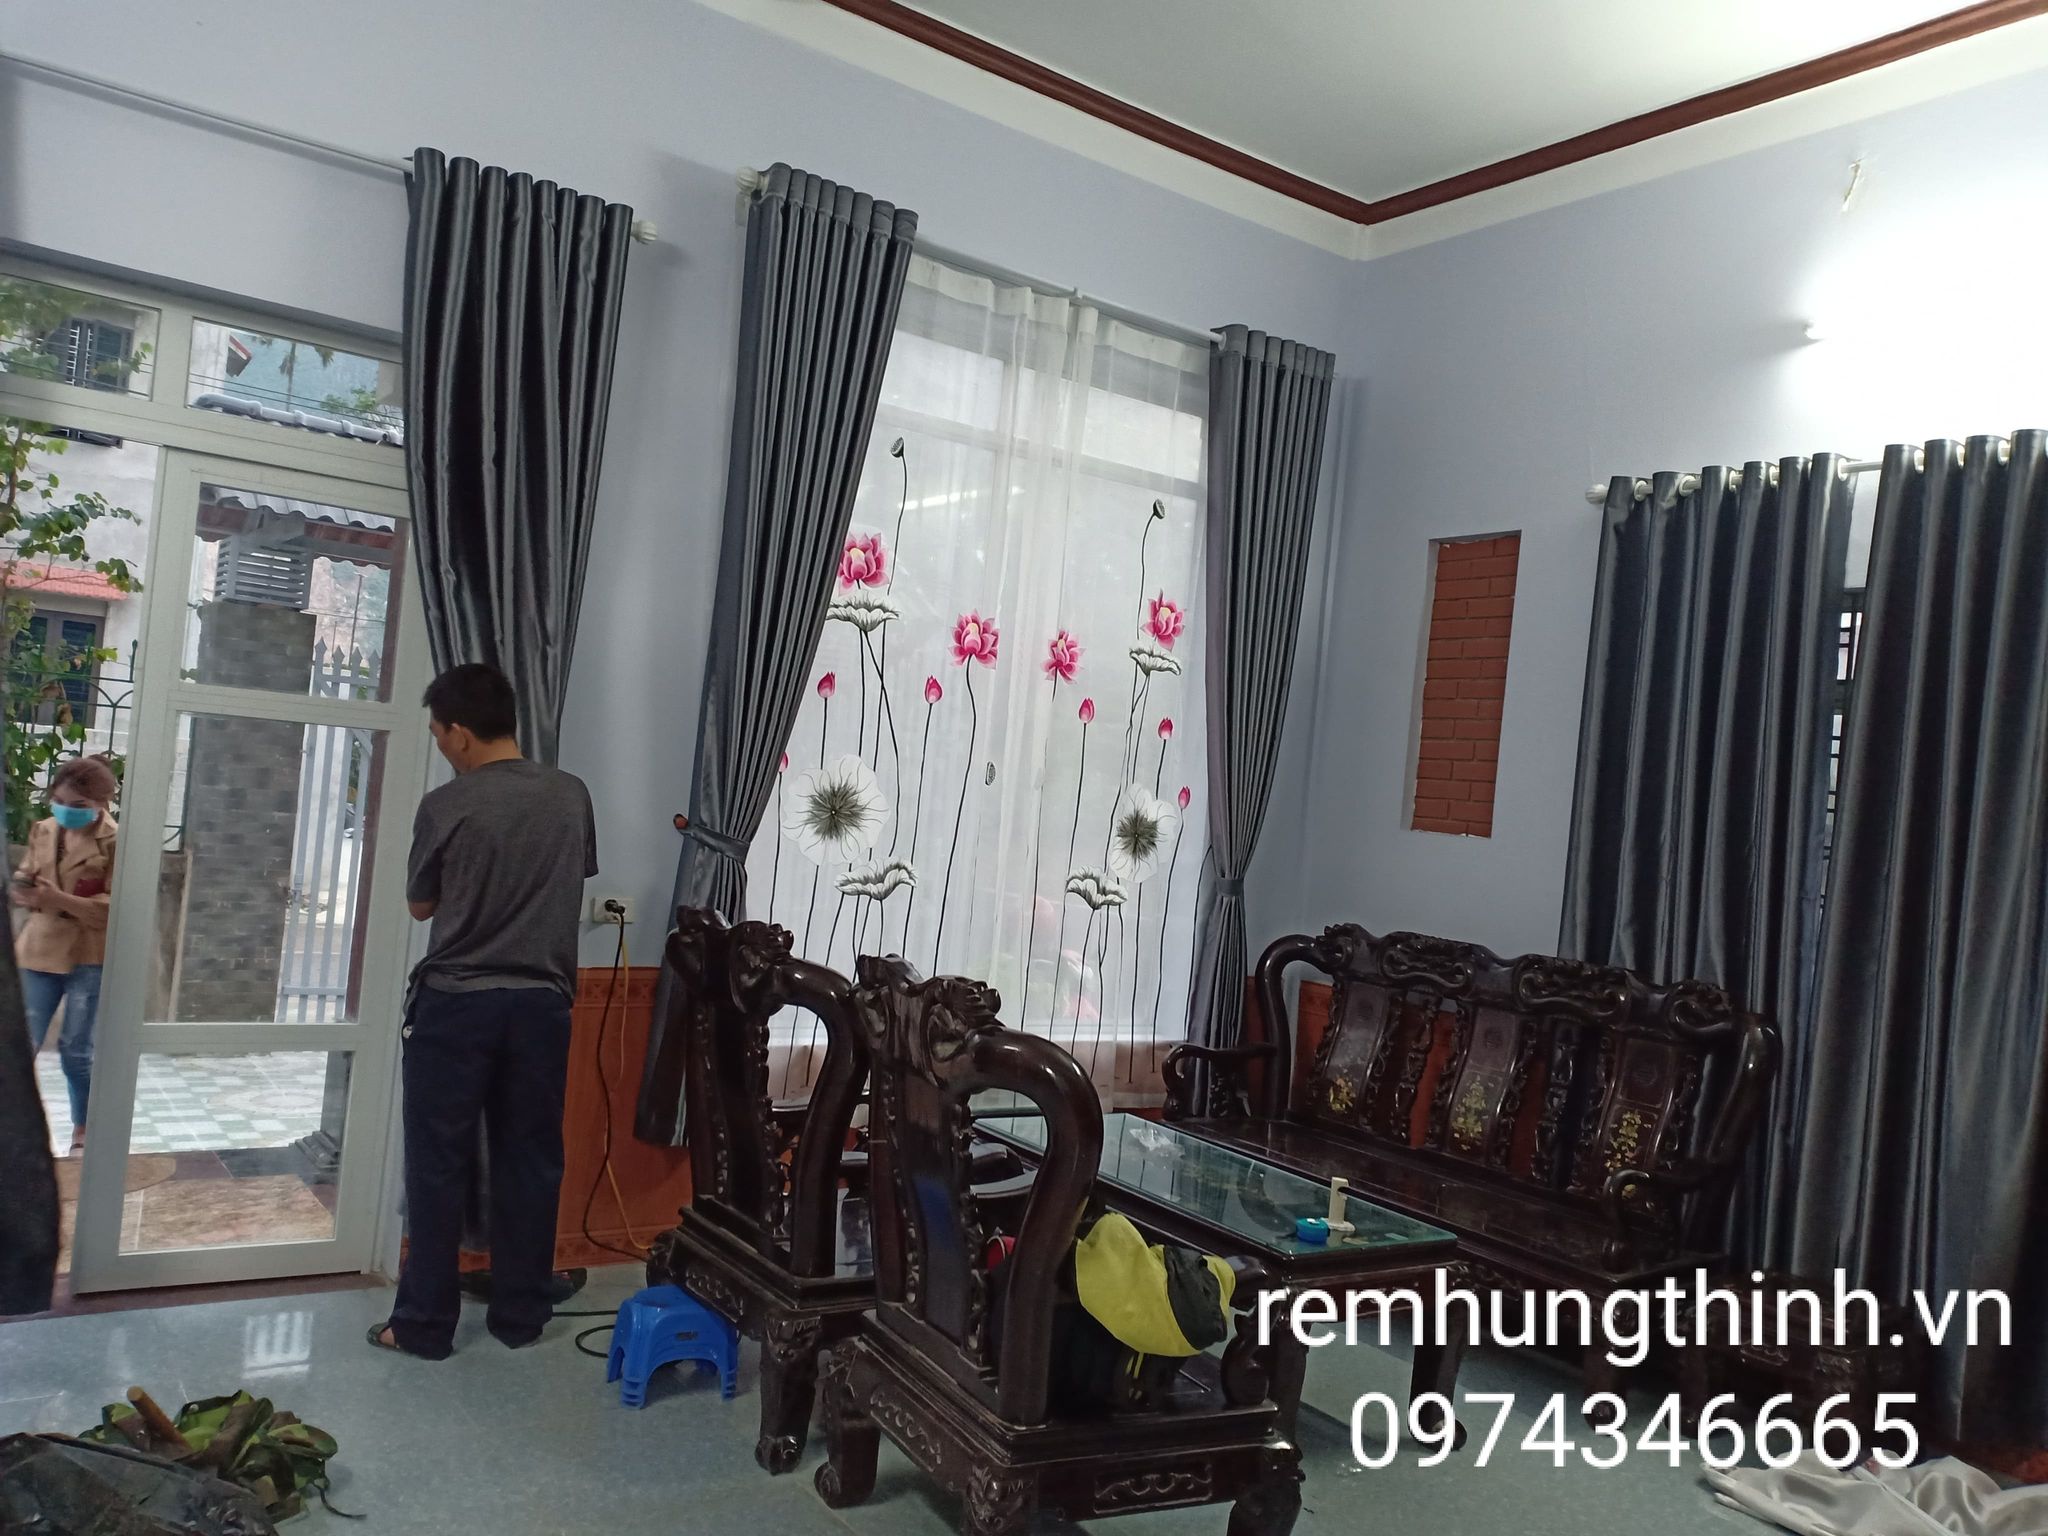 Địa chỉ mua rèm 2 lớp thêu tay uy tín tại xã Hoà Sơn huyện Lương Sơn, Hoà Bình